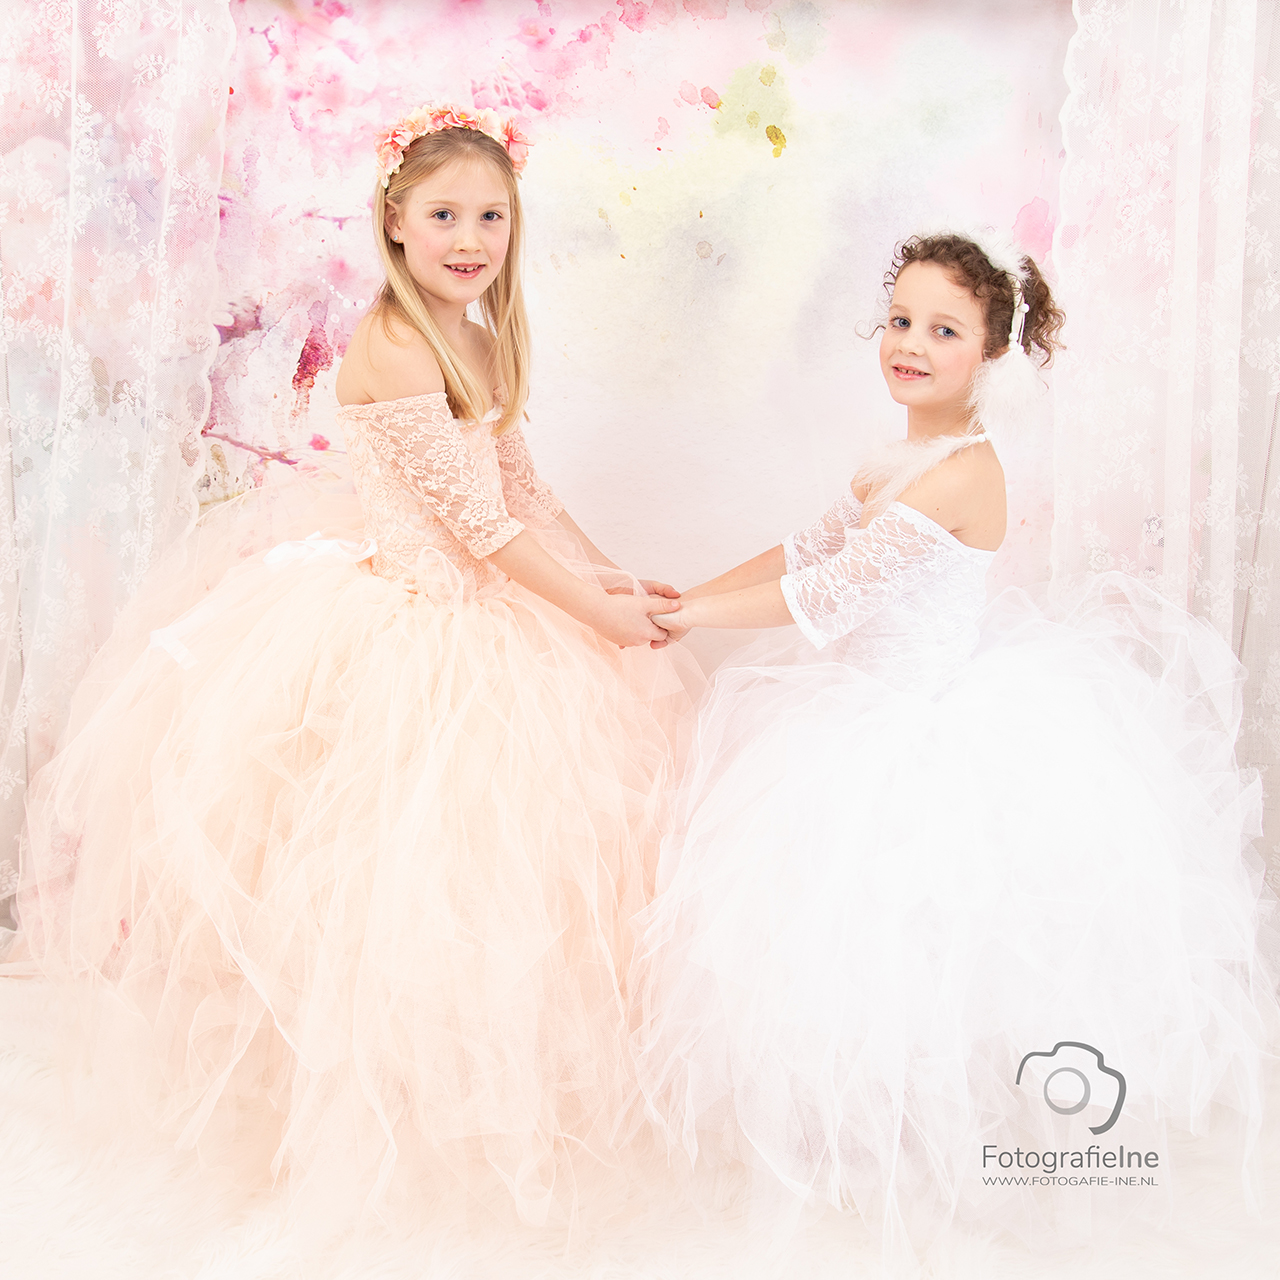 Fotografie Ine prinsessen fotoshoot Yara en Eef